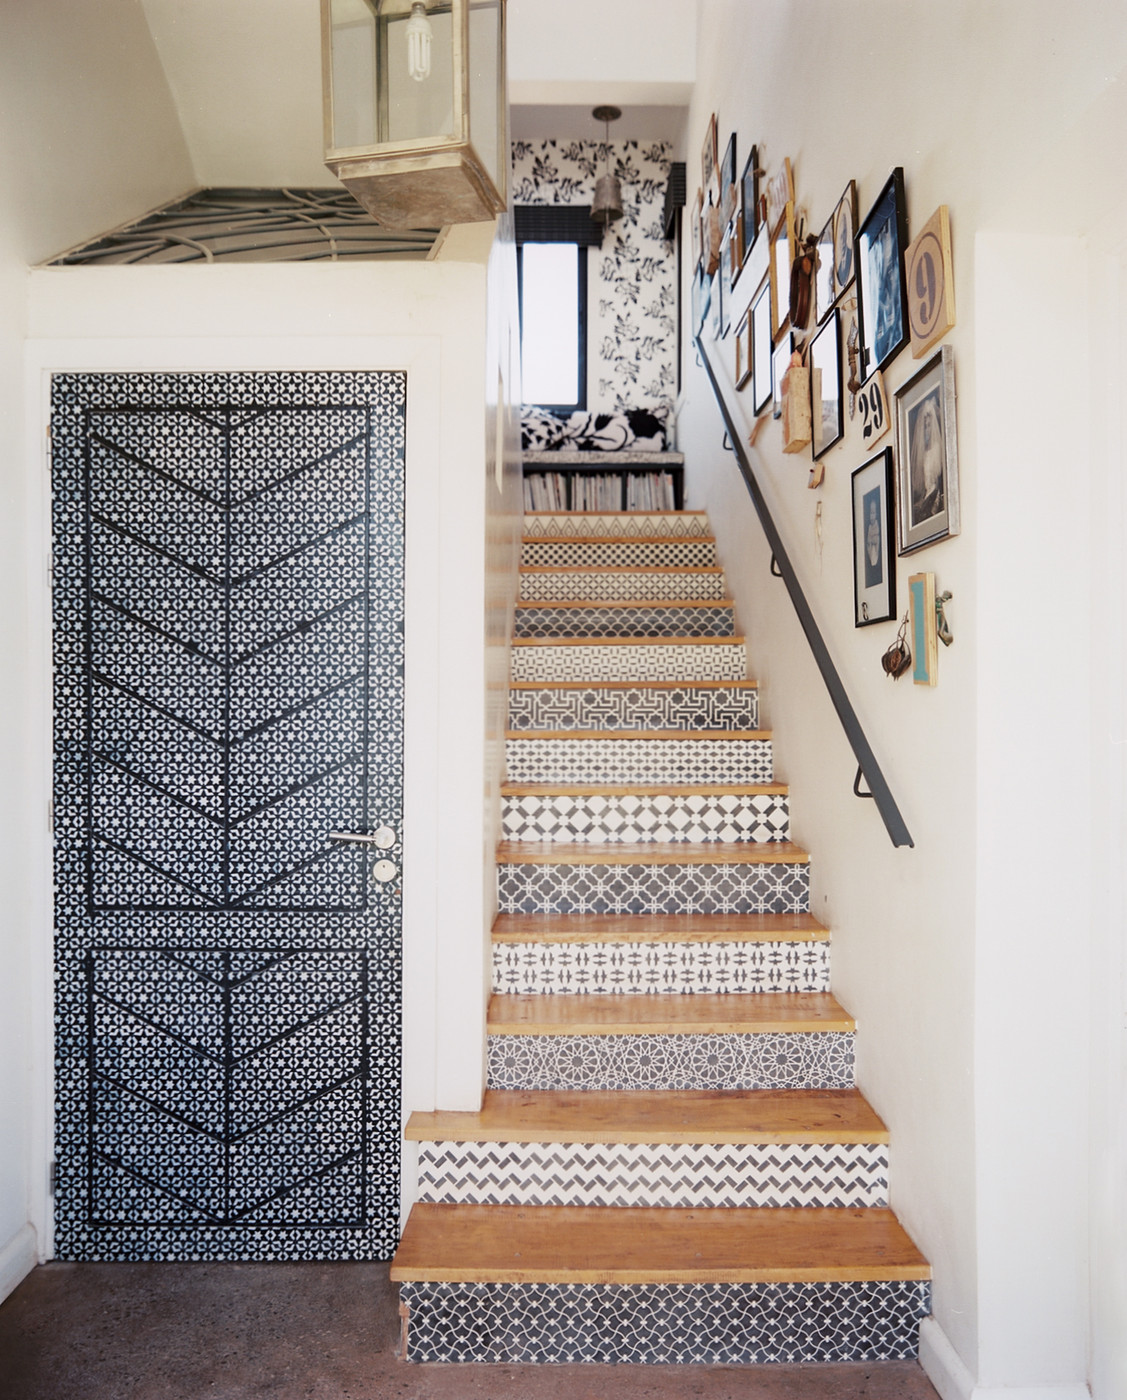 Escalier avec des carreaux de ciment ethniques en noir et blanc